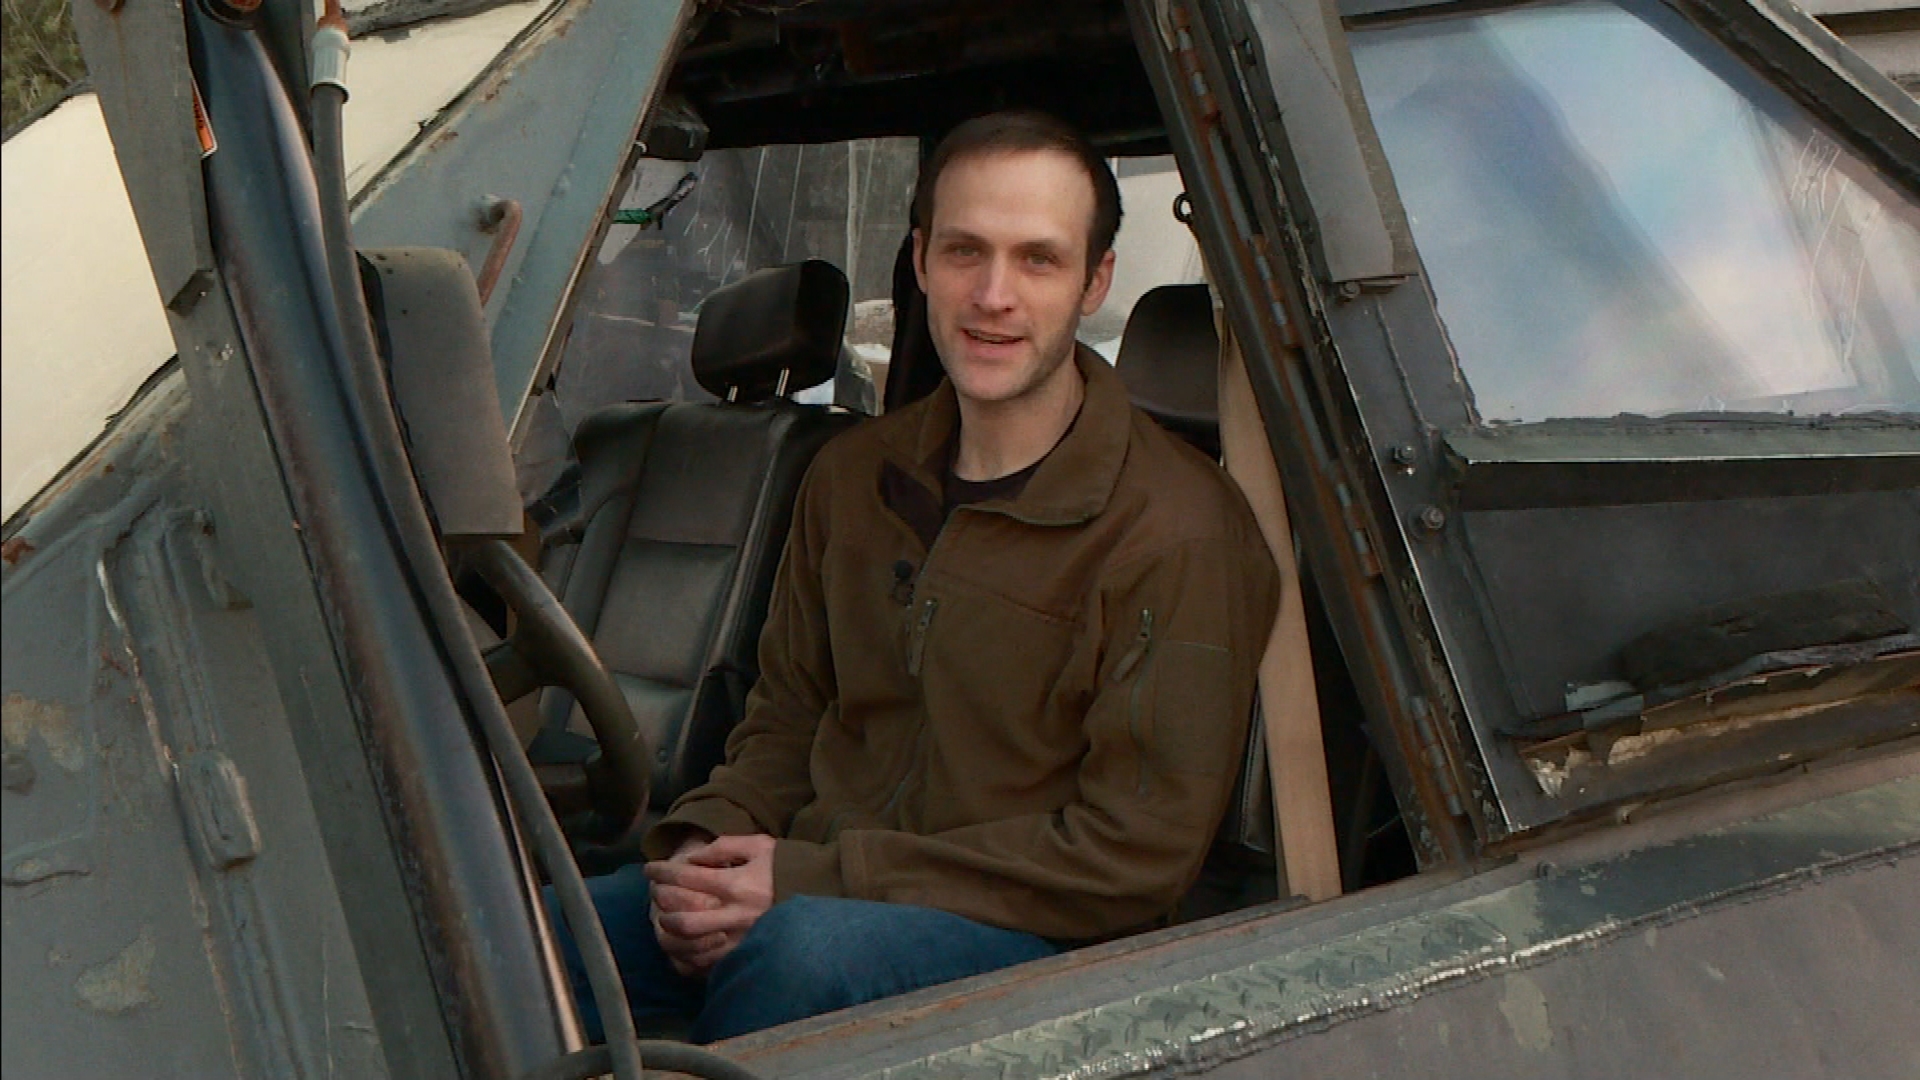 Ryan Shepard, owner of the Tornado Intercept Vehicle